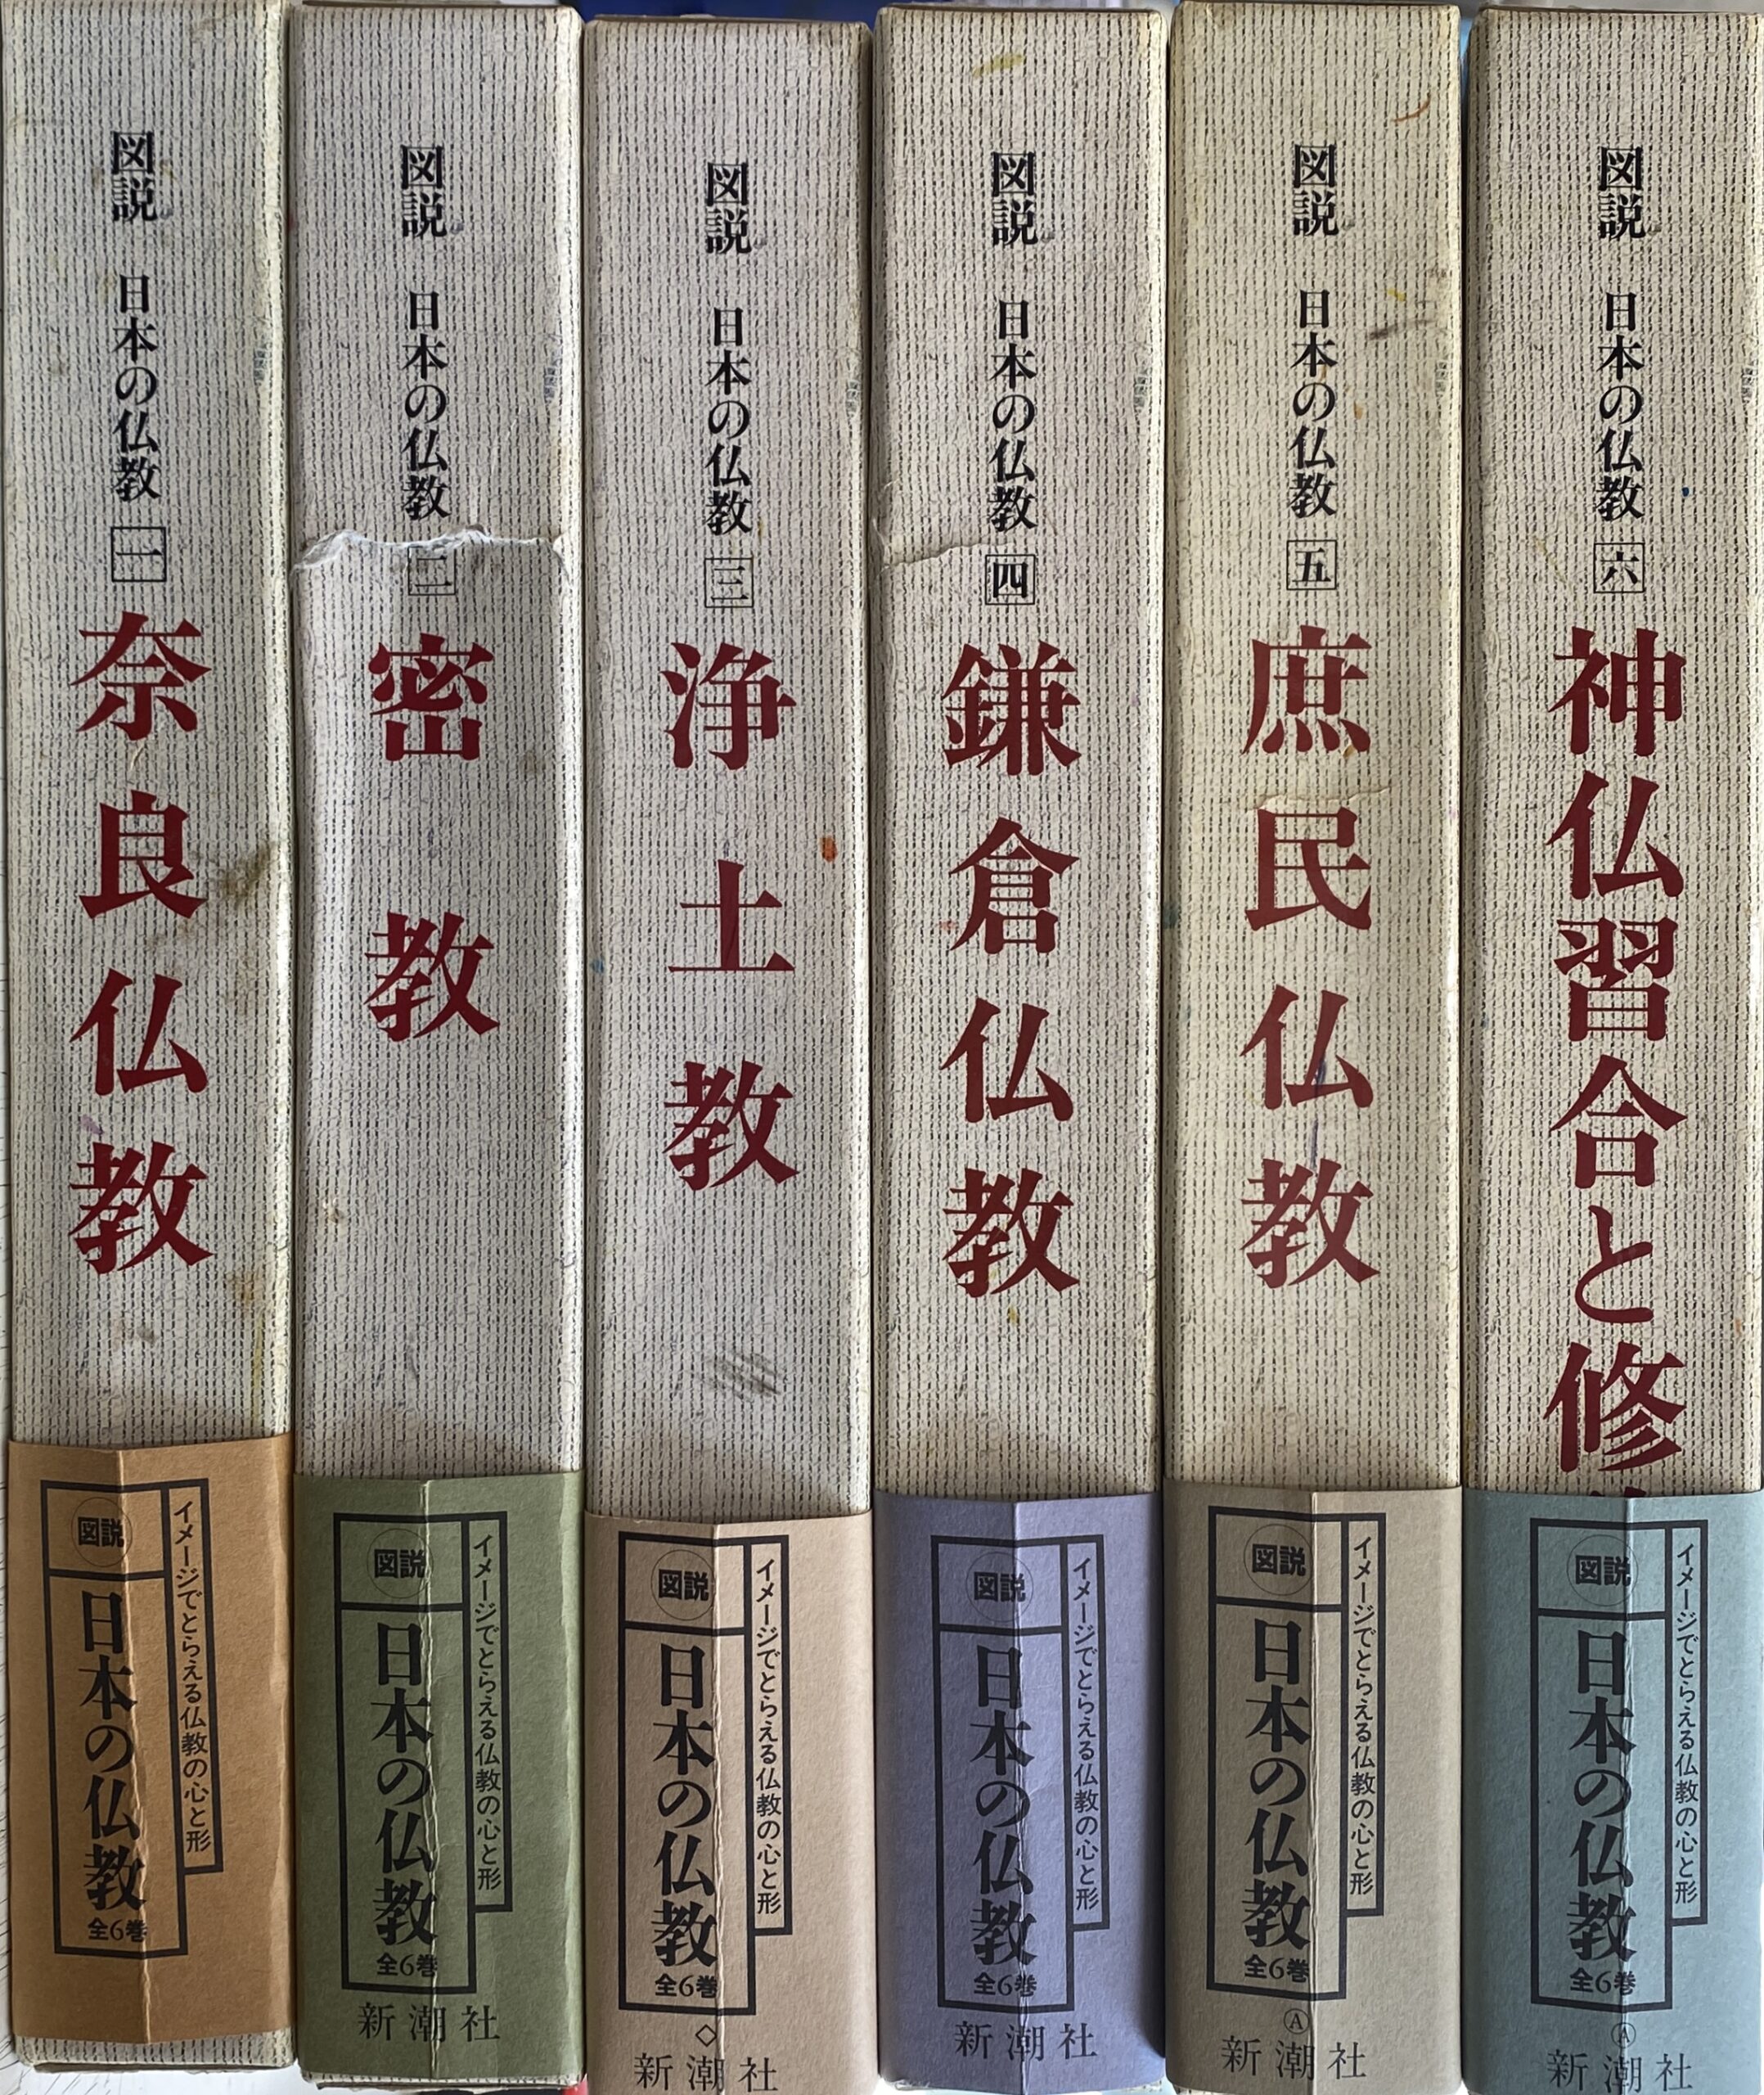 阿含経典 全６冊揃 増谷文雄 | 古本よみた屋 おじいさんの本、買います。